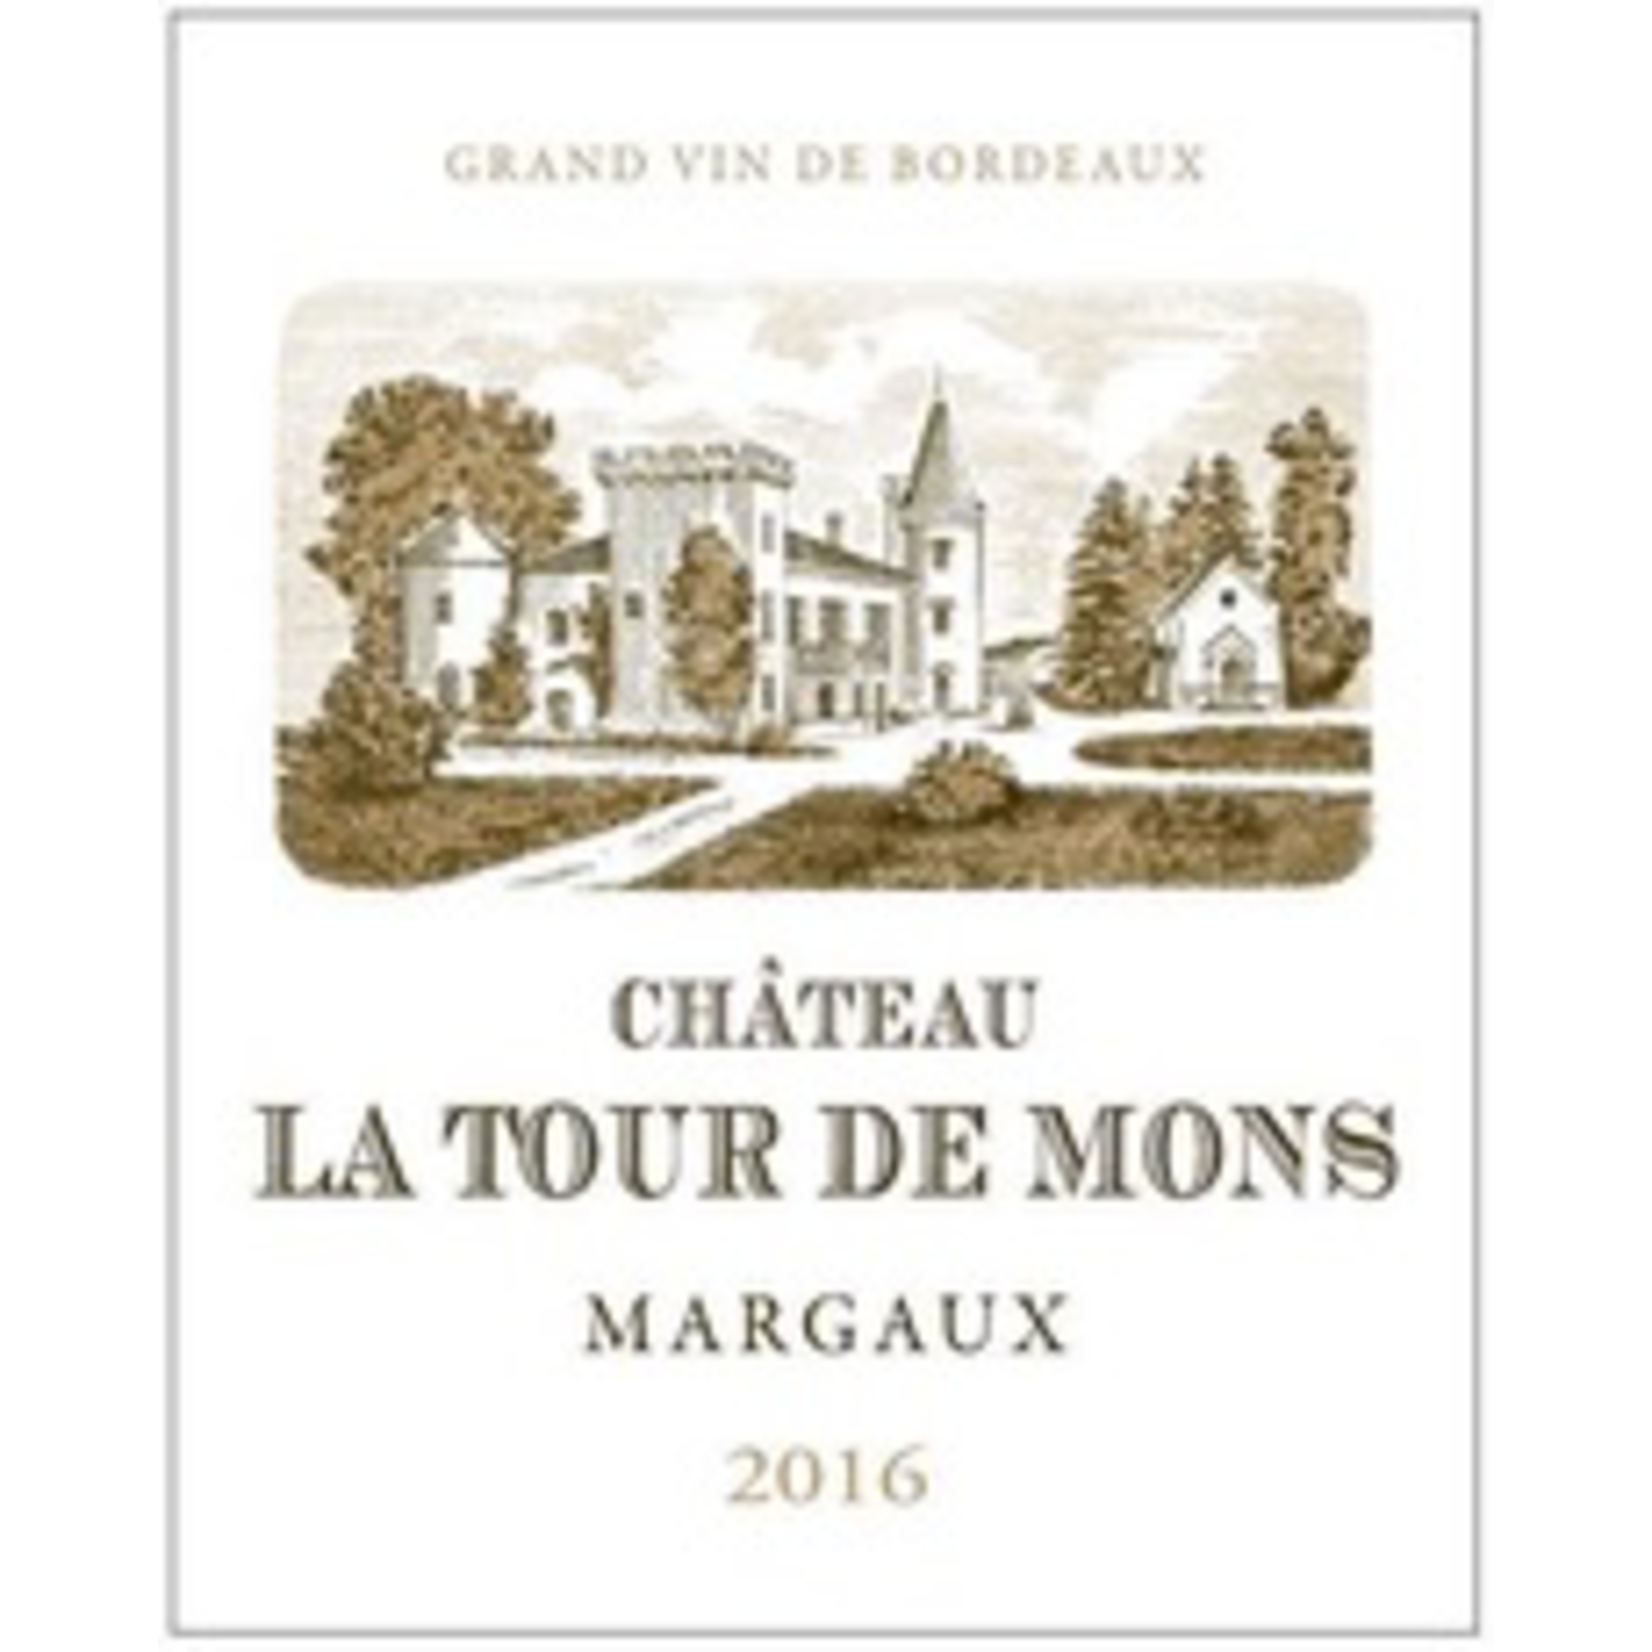 Wine Chateau La Tour de Mons 2018